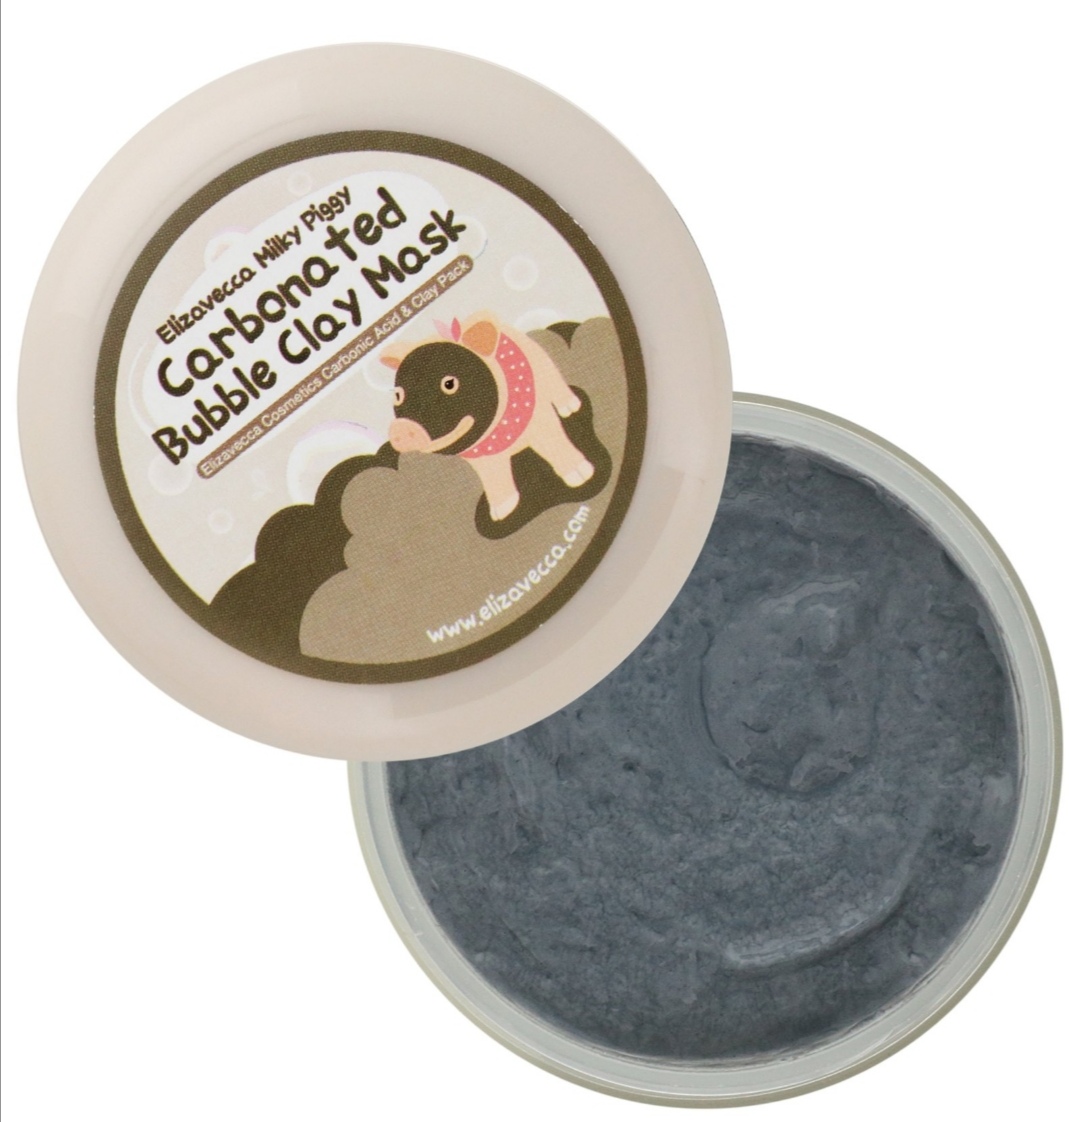 Elizavecca, Milky Piggy Carbonated Bubble Clay Mask, 100 g